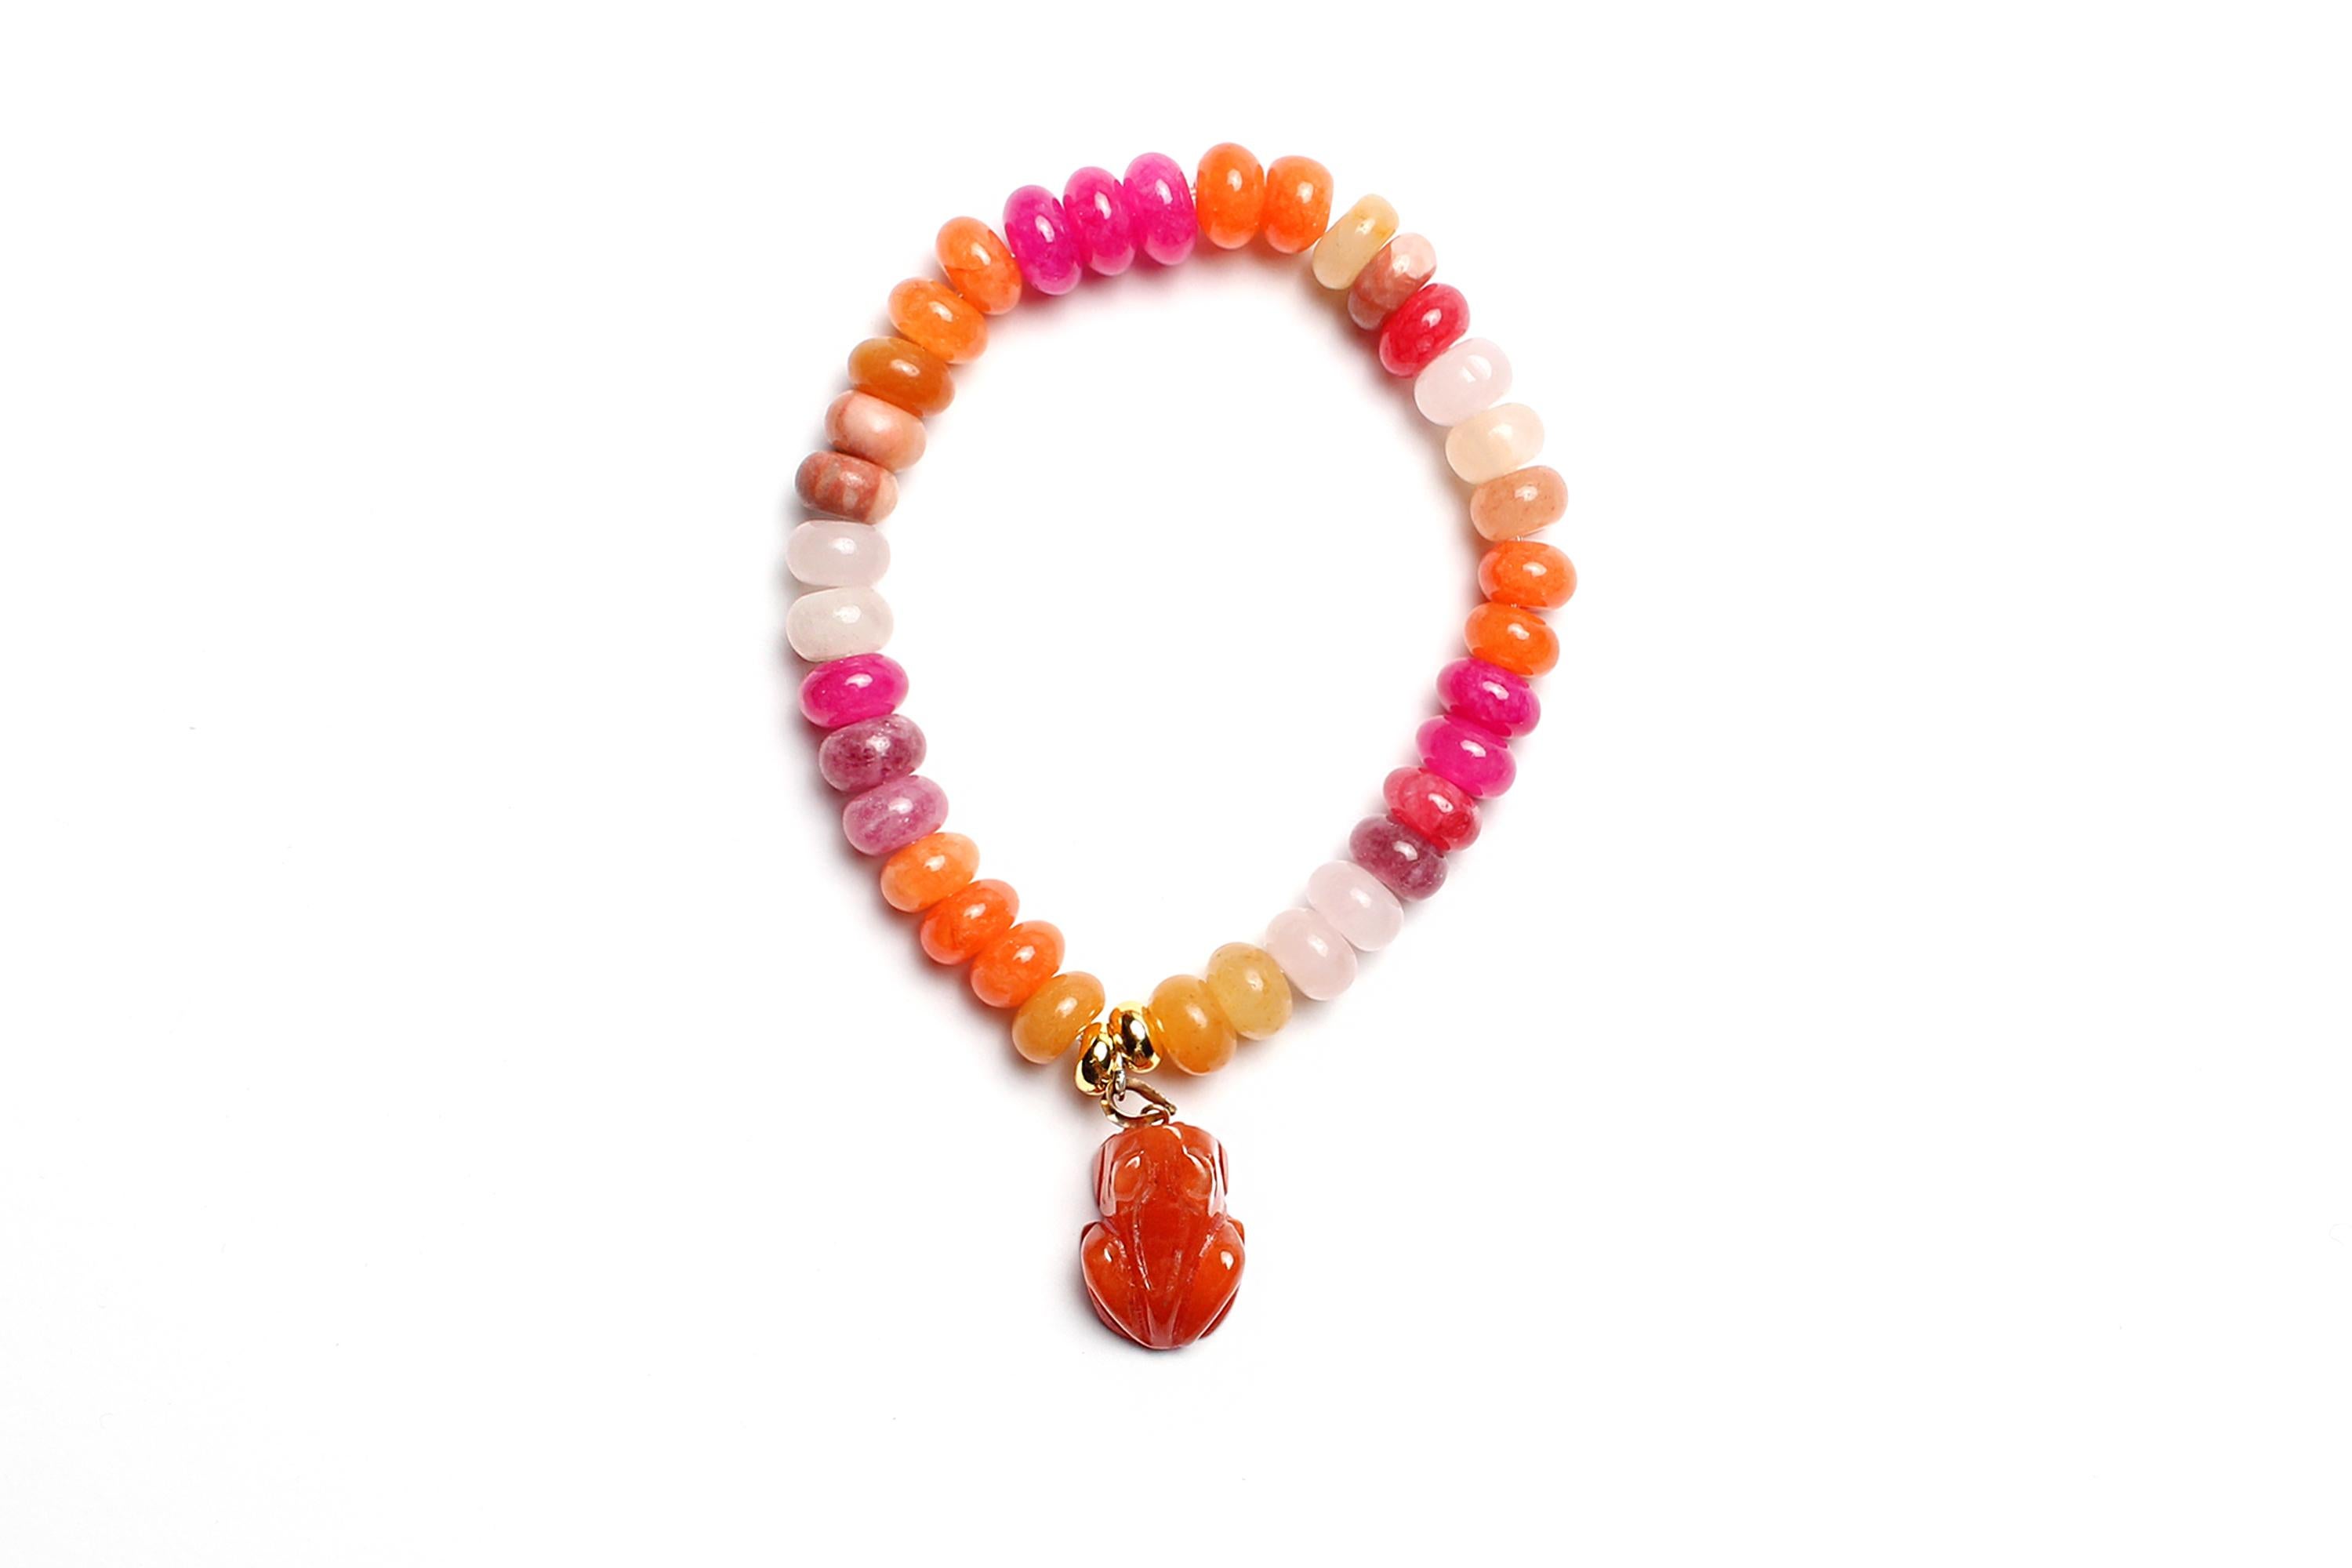 Dieses leuchtende Perlenarmband kann zu Ihrer Sammlung von Armbändern hinzugefügt werden und passt perfekt zu weiteren CLARISSA BRONFMAN Perlenarmbändern aus unserer Kollektion!

Perfekt, um Ihren Look zu verschönern und für jede Jahreszeit ein